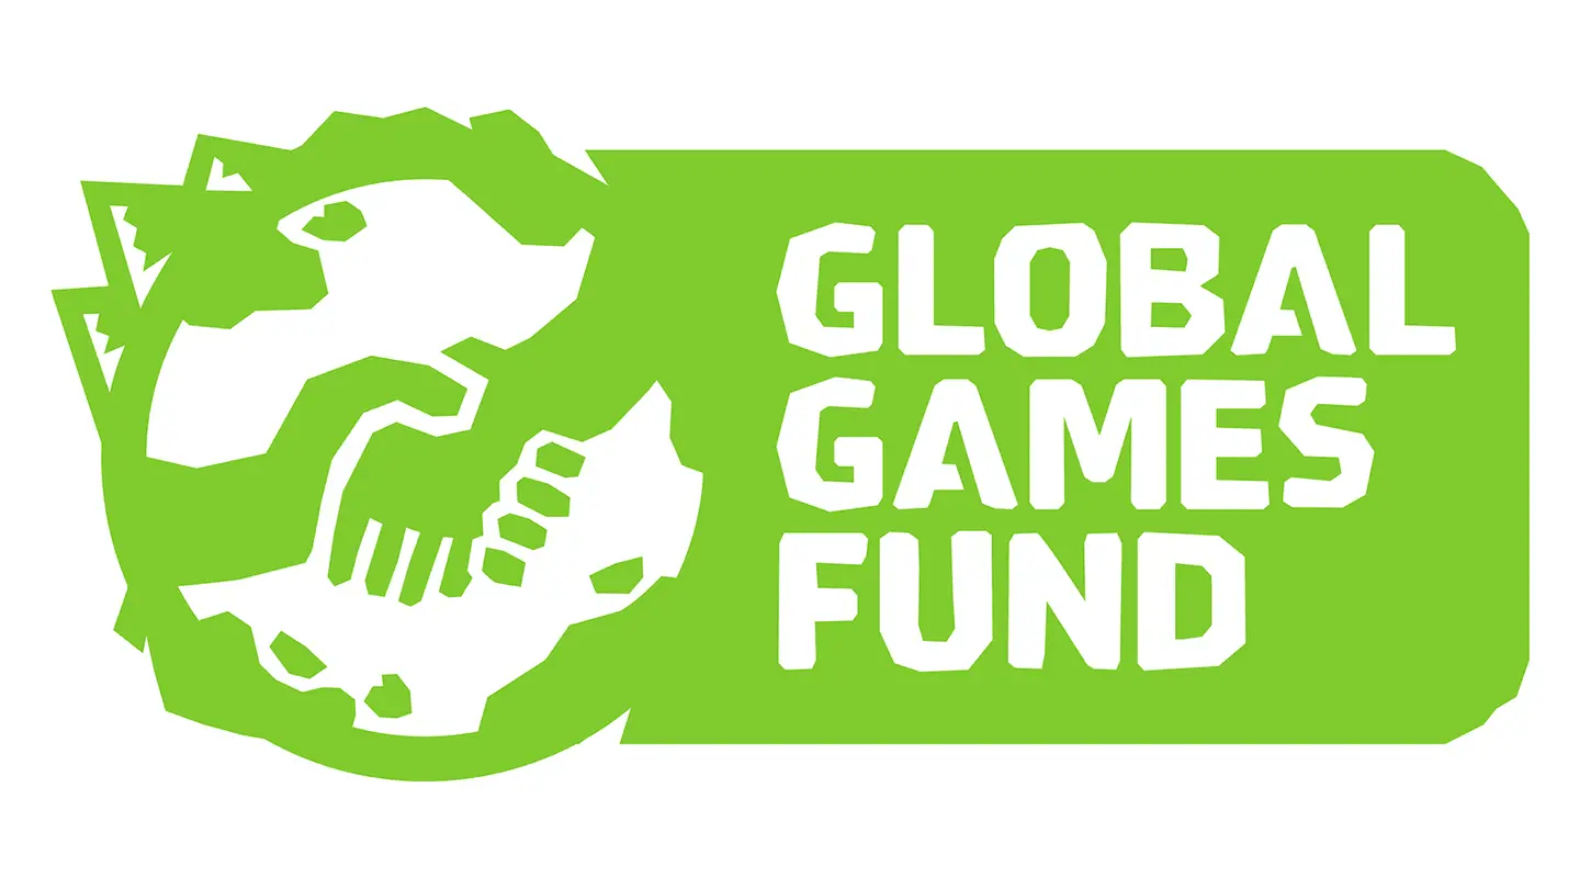 Quỹ Global Games Fund có khoản đầu tư lớn cho nhà làm game. Ảnh: IGN.